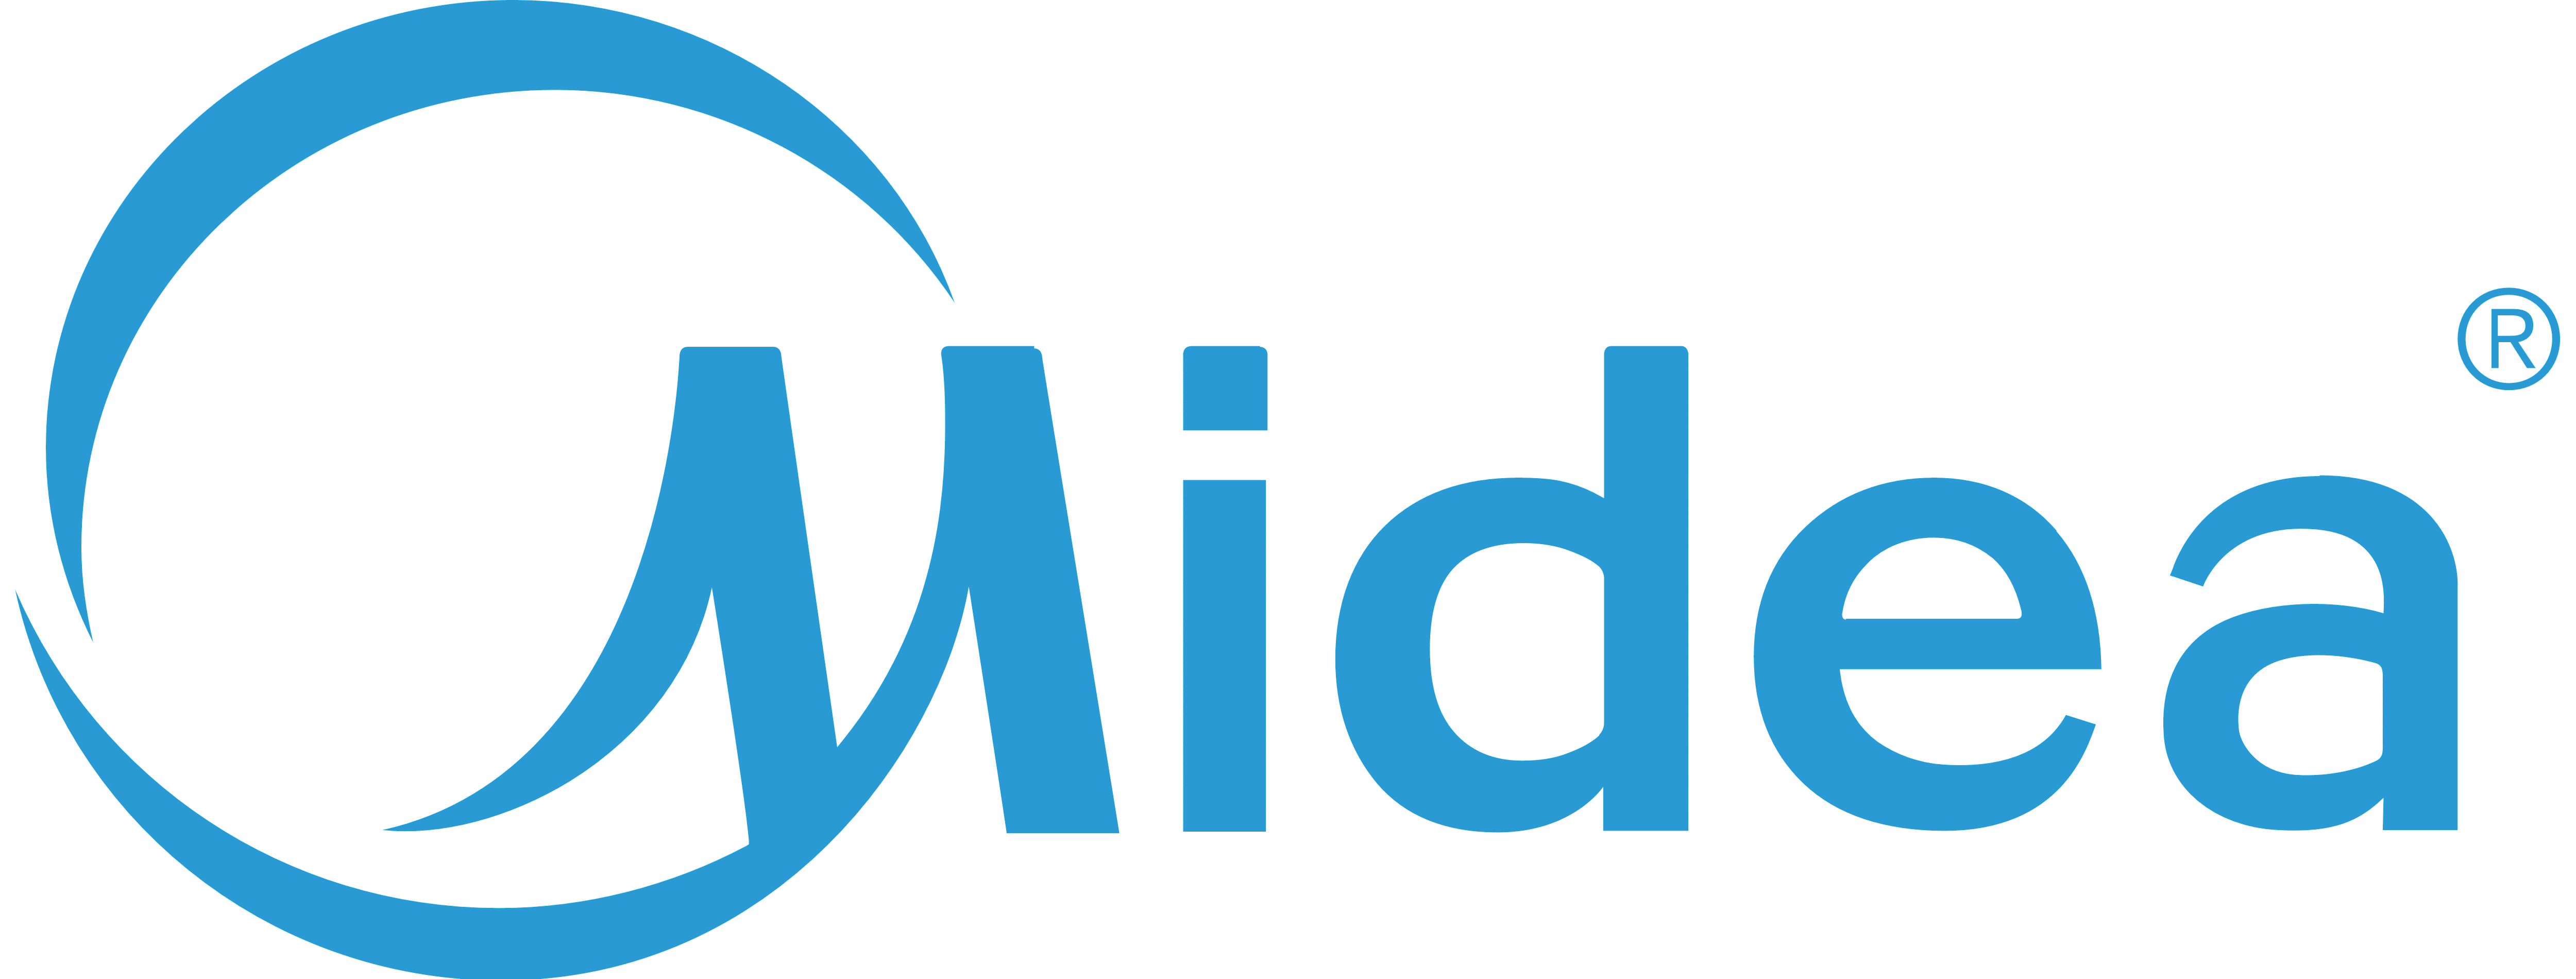 I-Midia_logo